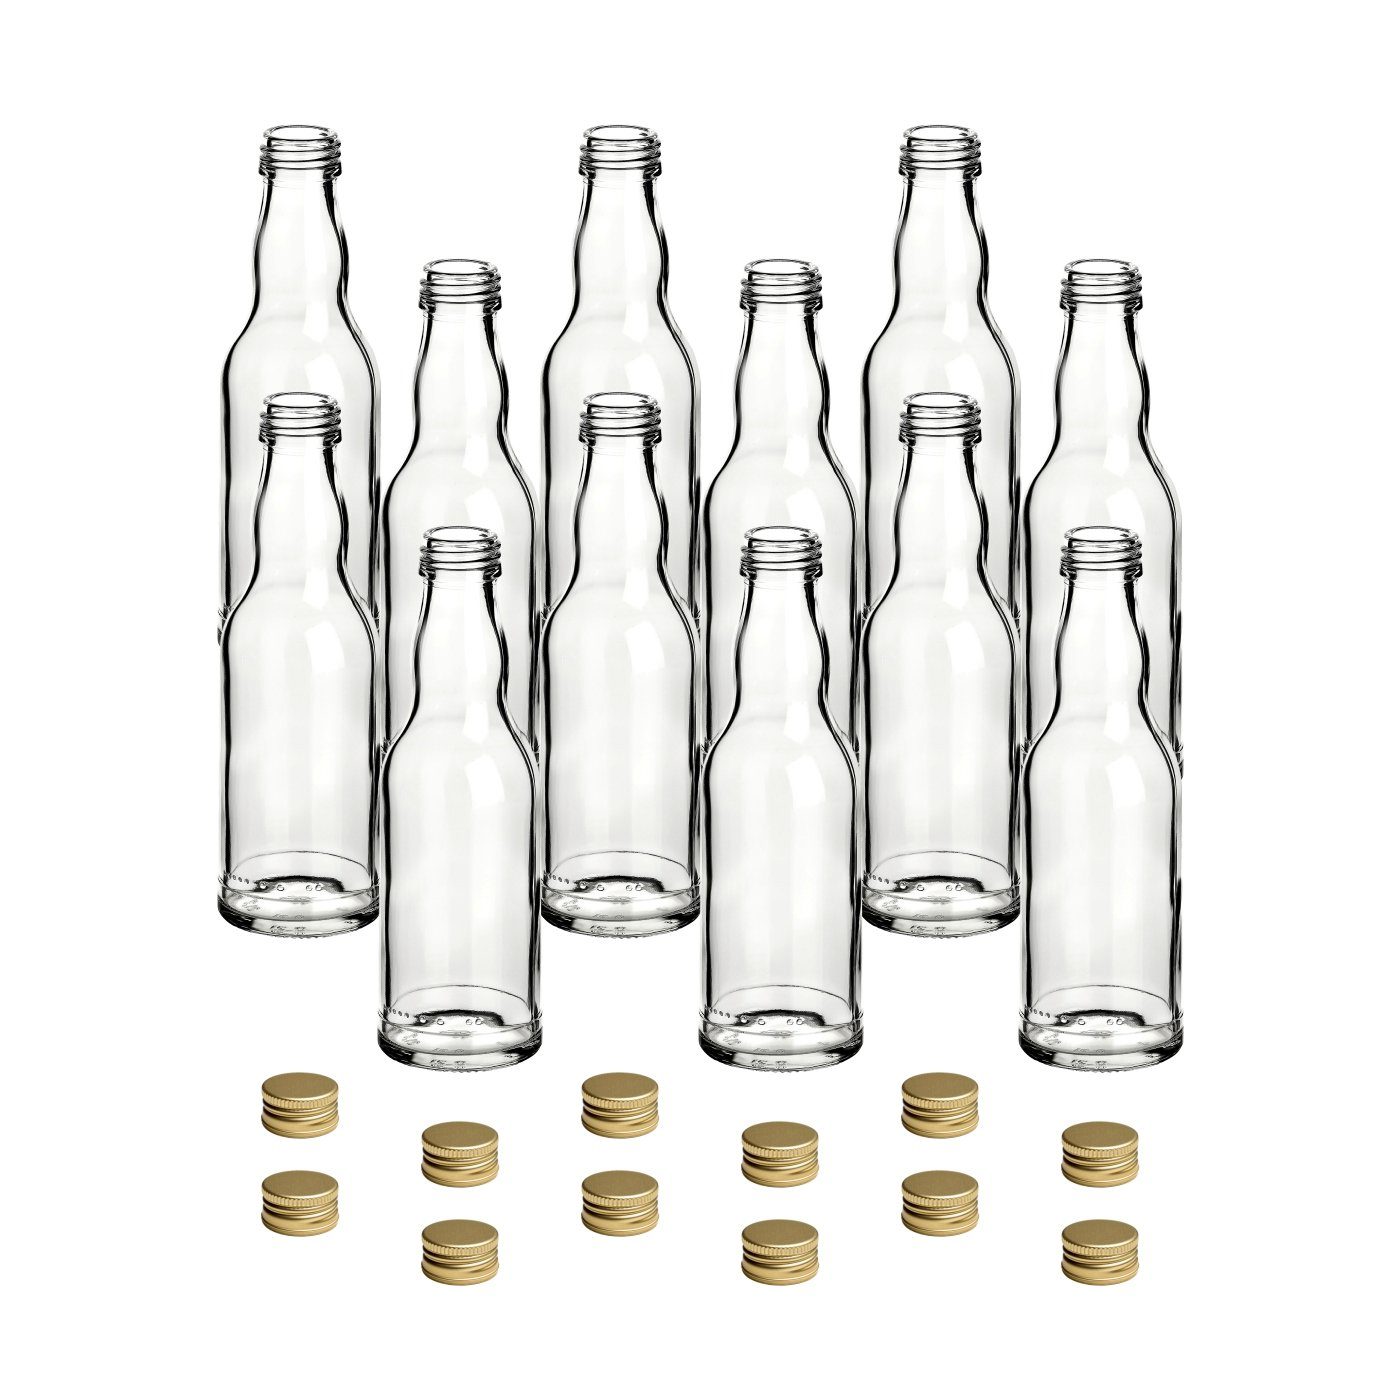 gouveo Trinkflasche Glasflaschen 200 ml Kropfhals mit Schraub-Deckel - Kleine Flasche 0,2l, 12er Set, goldfarben